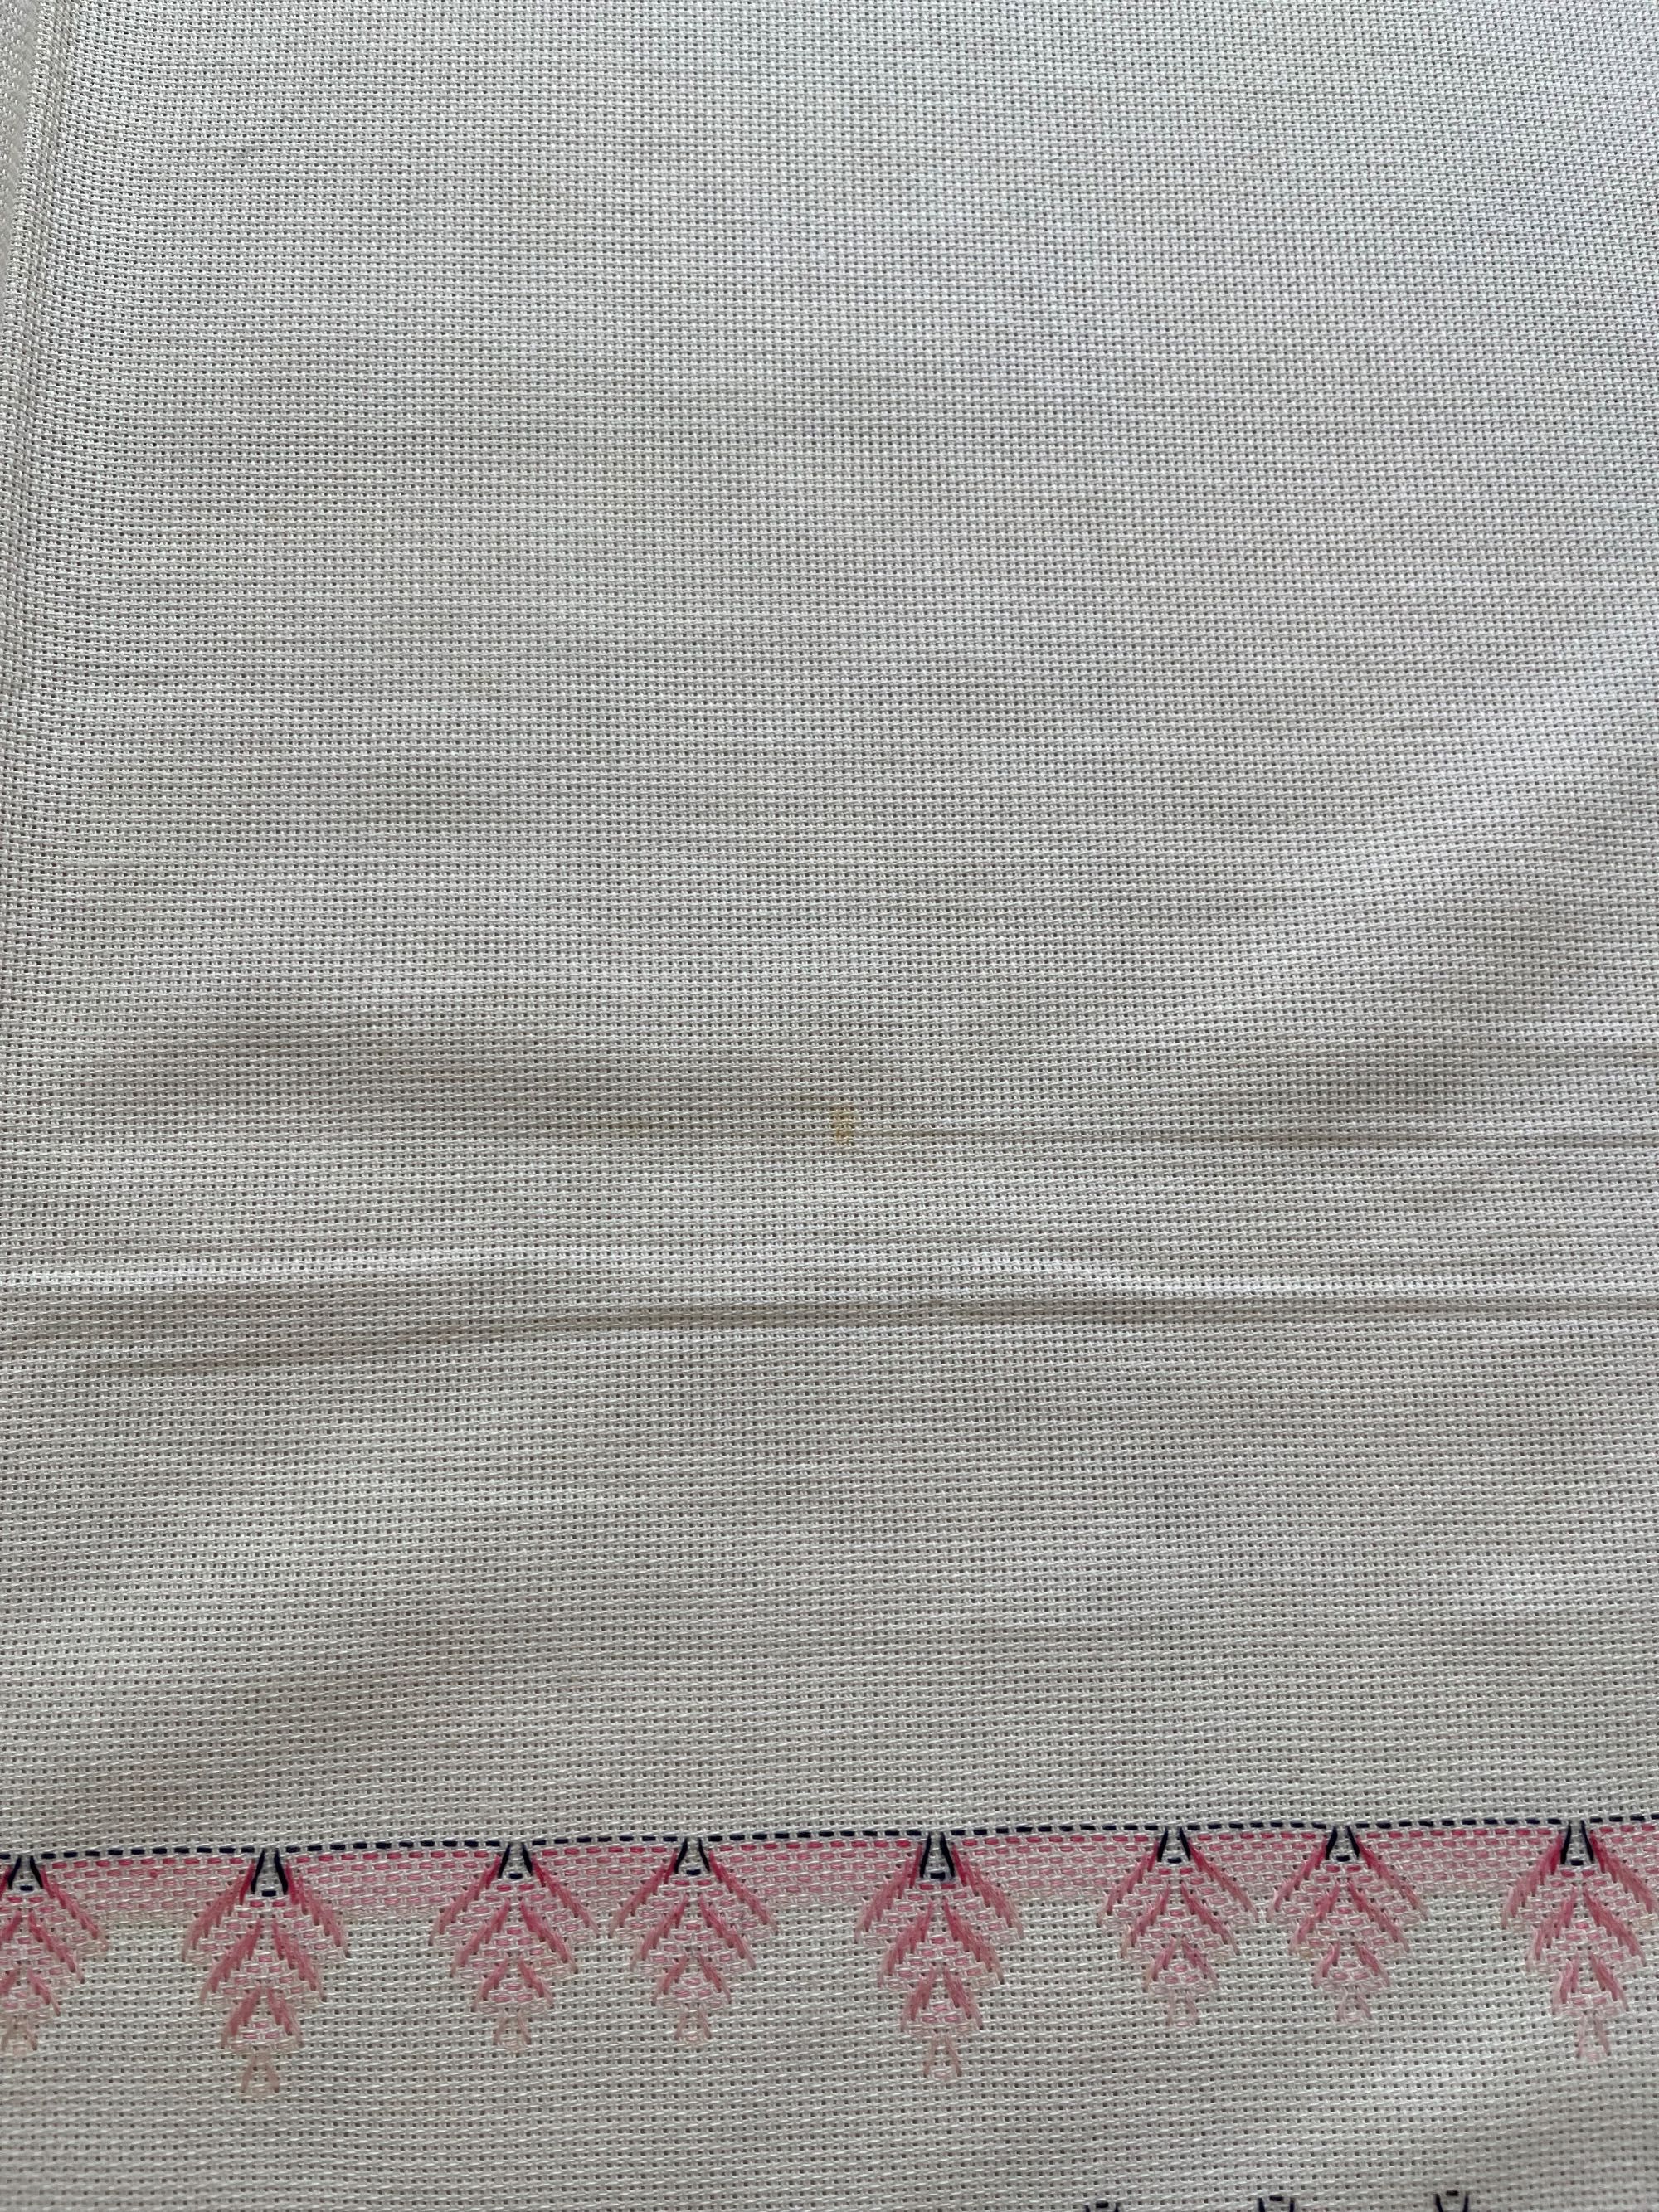 Toalha de mesa quadrada branca com padrões em rosa